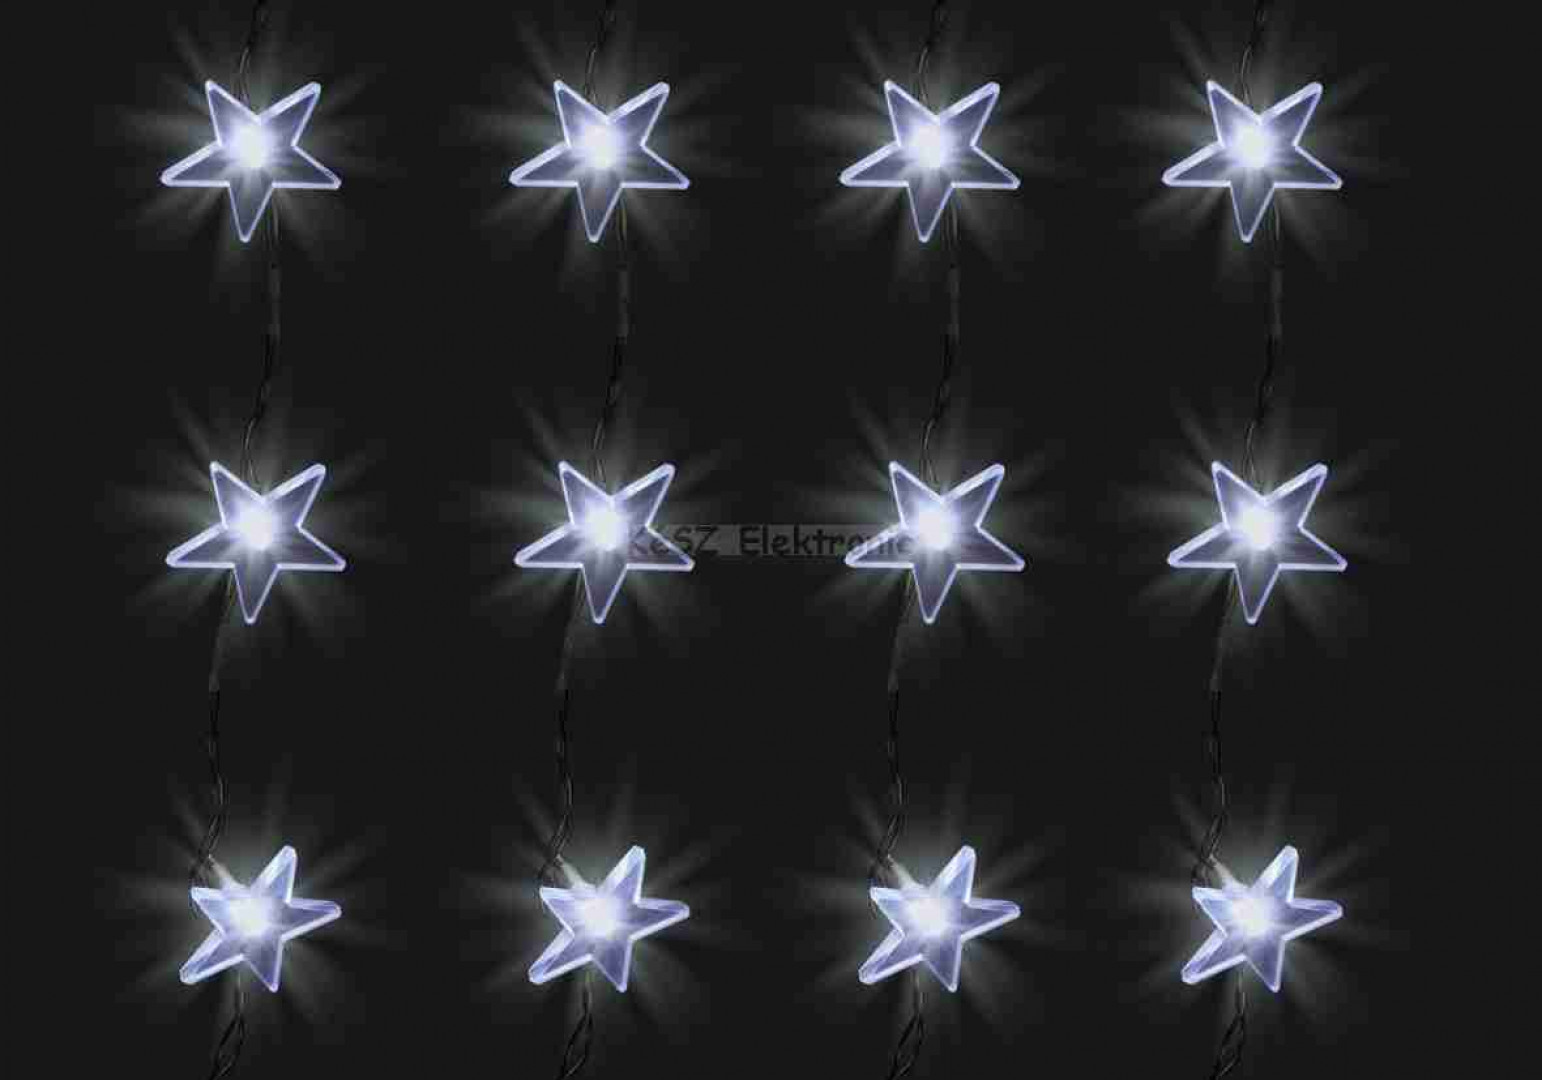 LED-es fényfüggöny, csillag, 1,5x1m, 230V